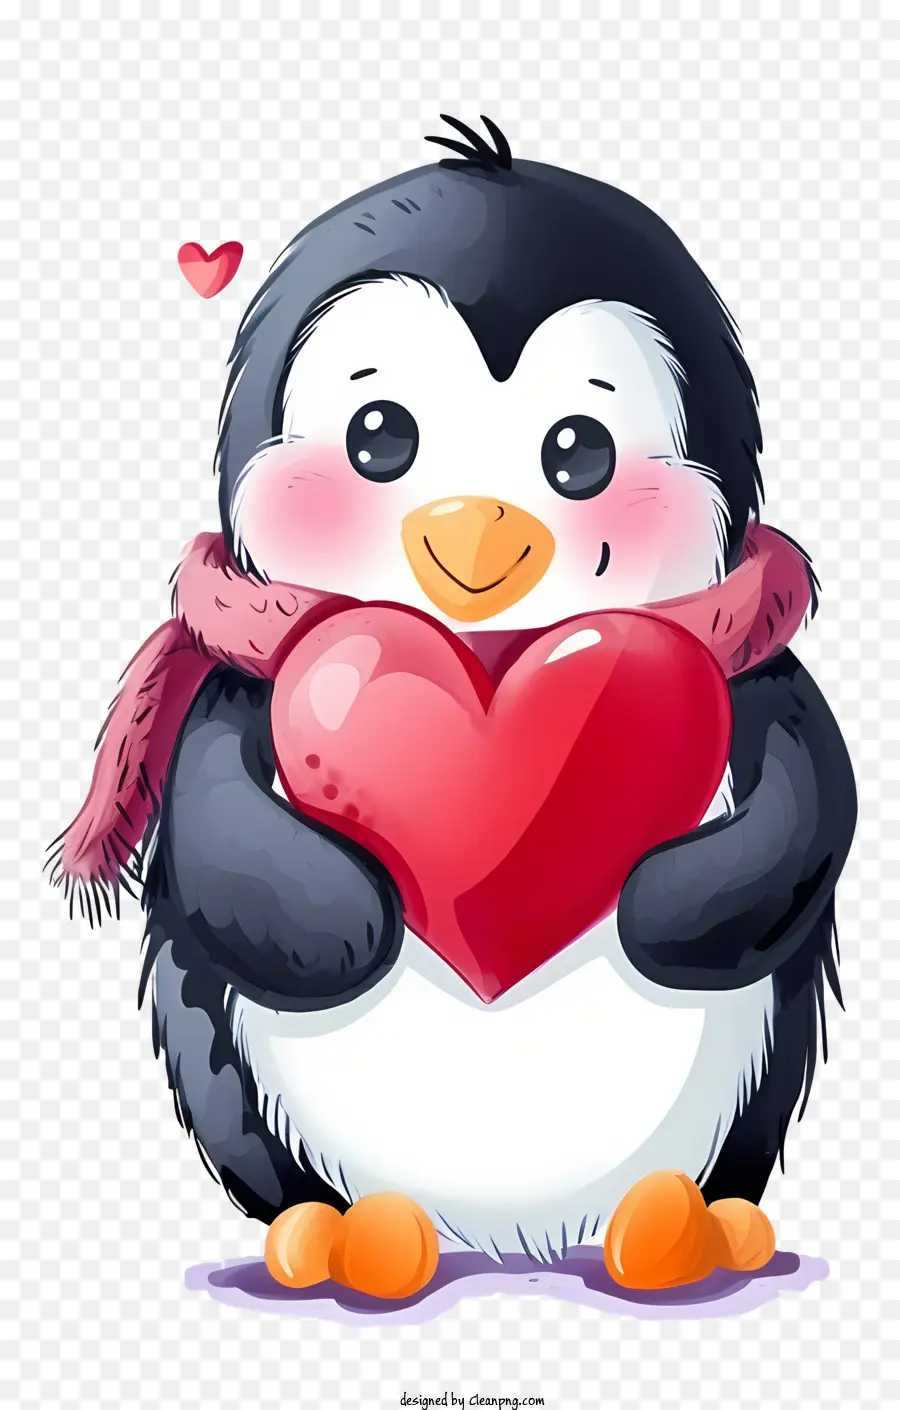 Vector Draw Charakter Design Valentinstag Pinguin niedlicher Pinguin -Pinguin tragen Schalpinguin Halten Sie Herz - Ein lächelnder Pinguin, der einen Schal trägt und ein Herz hält